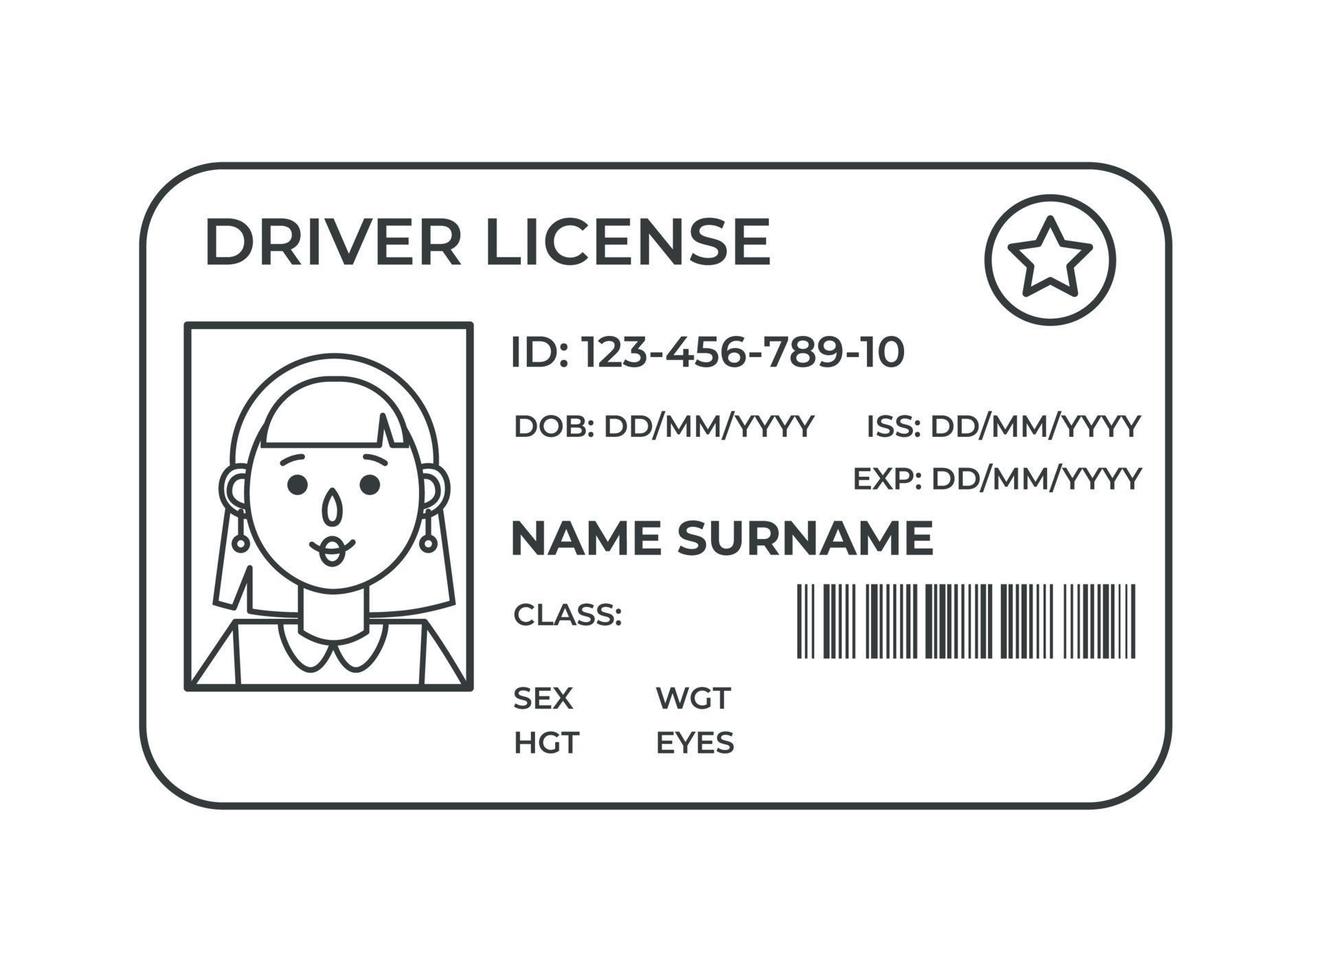 Licencia de conducir. una tarjeta de identidad de plástico. vector